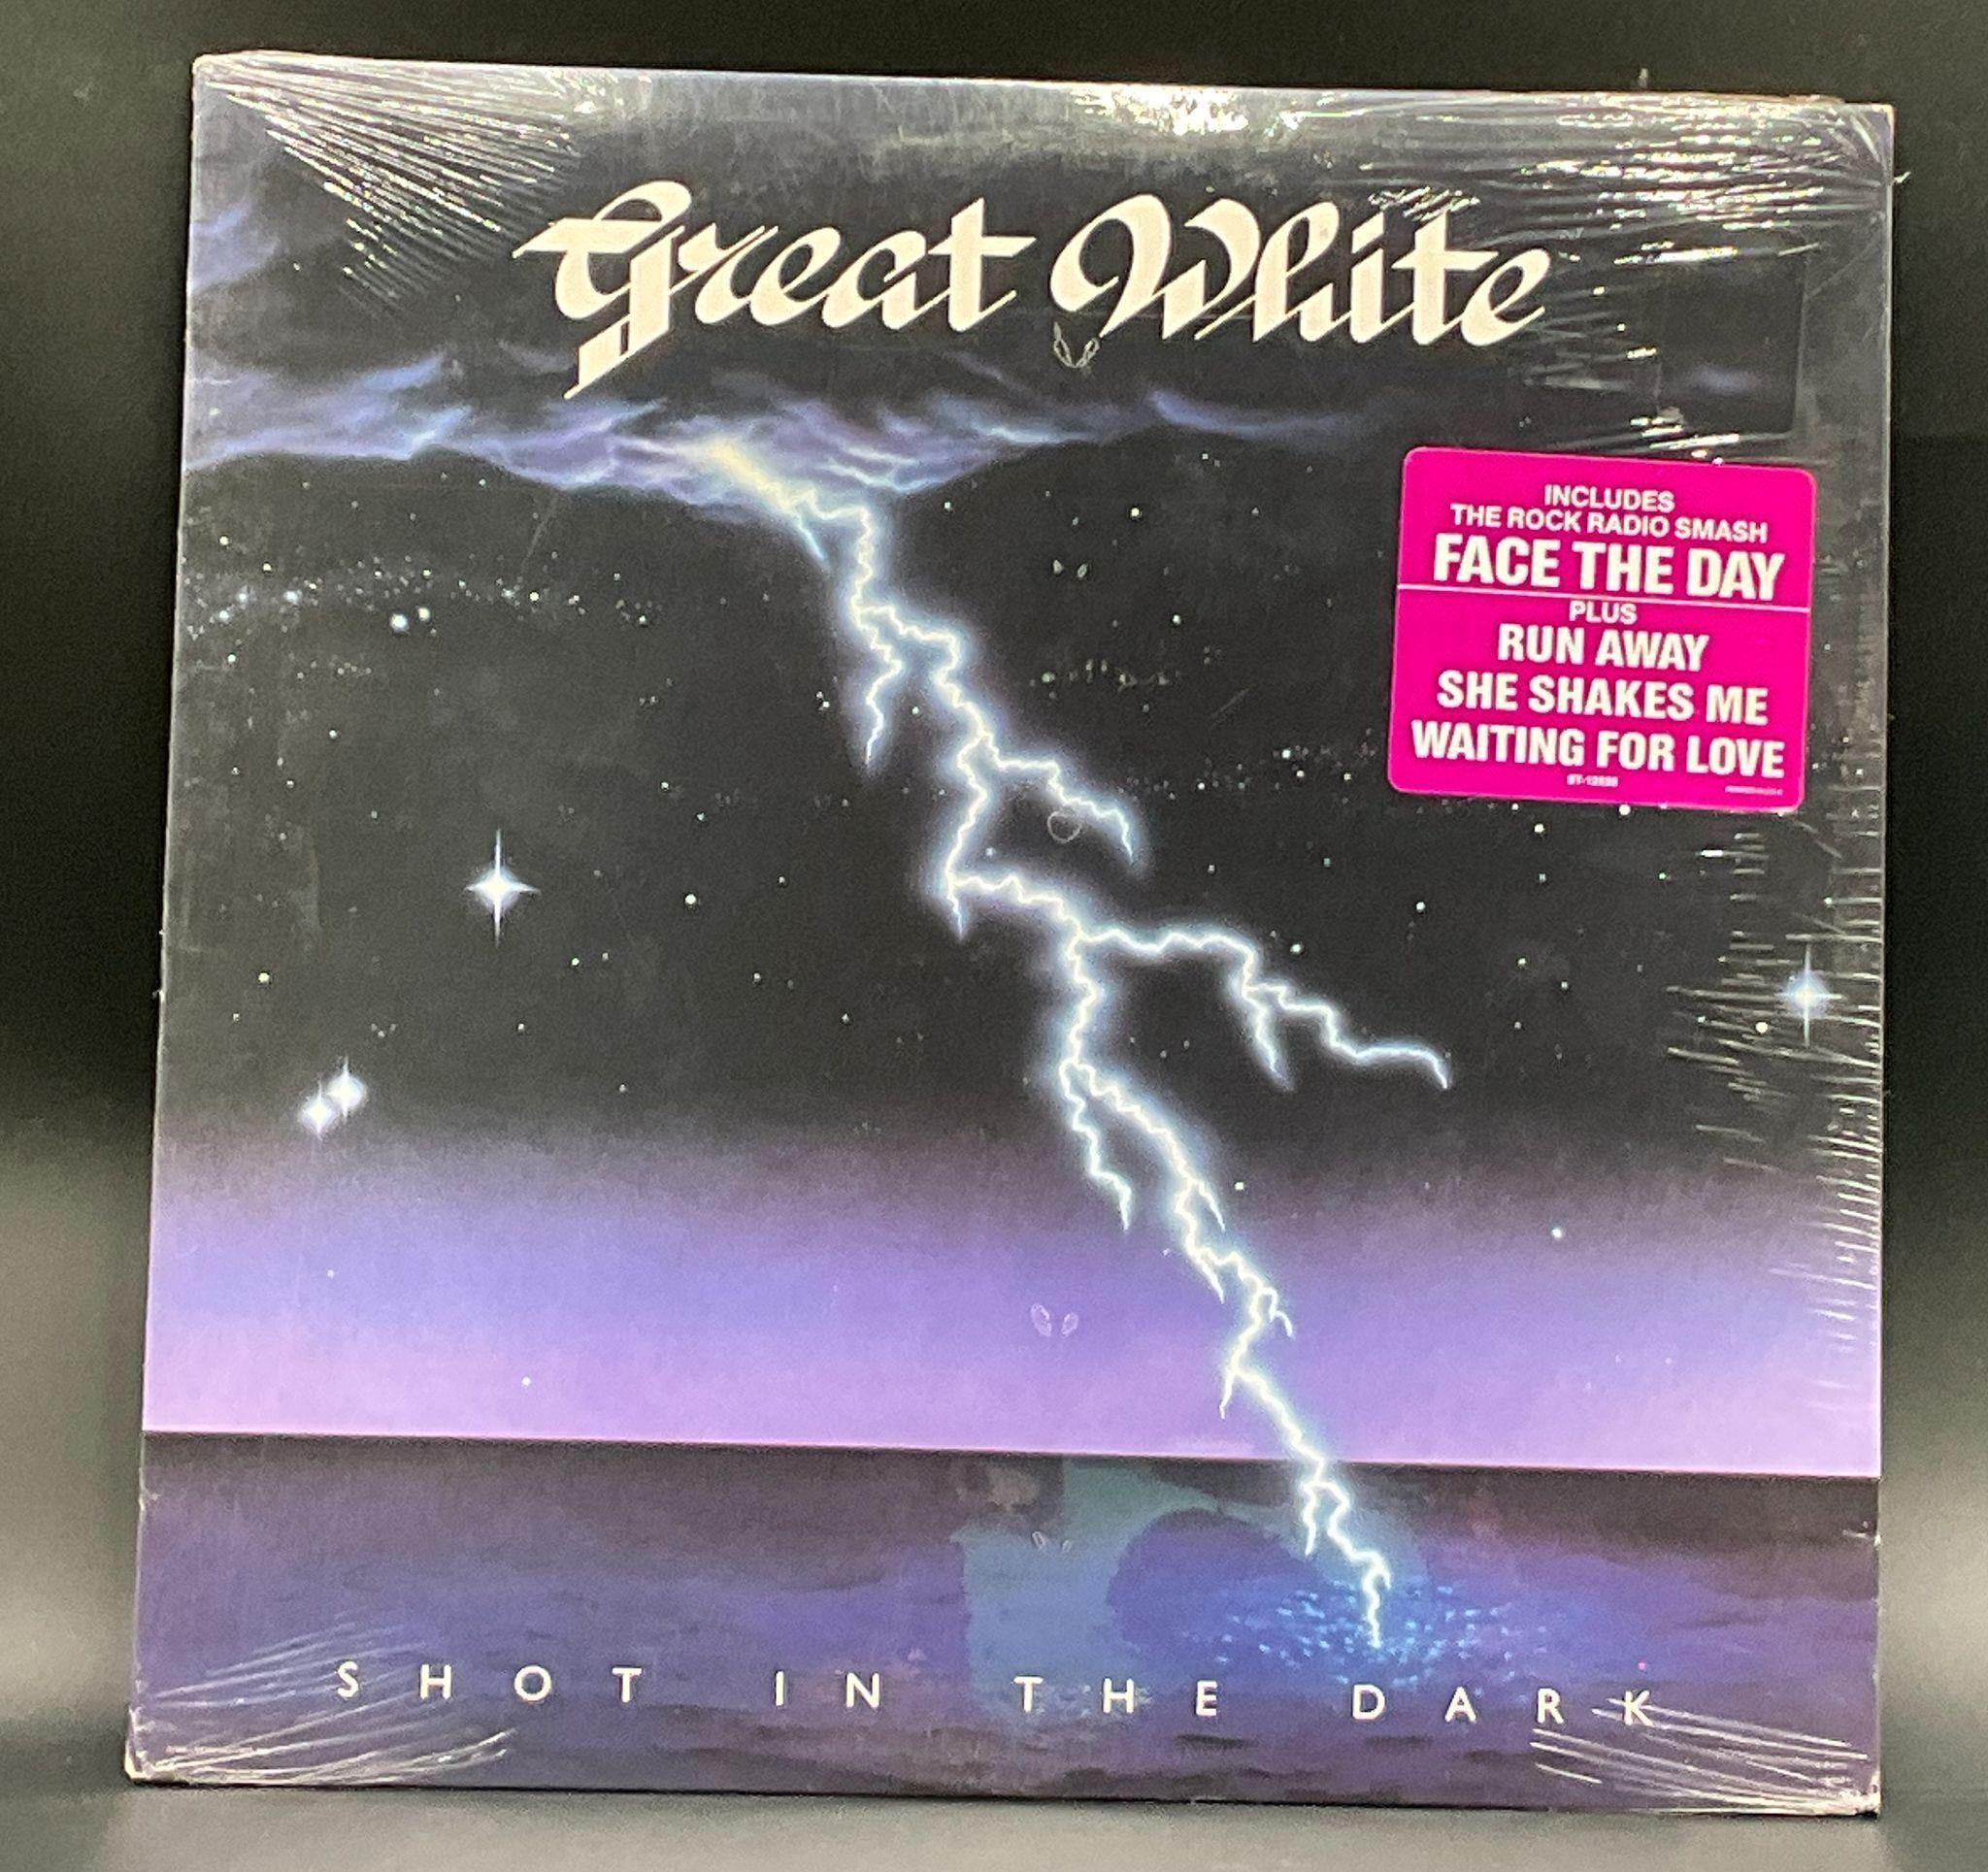 Sealed 1986 OG Great White "Shot In The Dark" LP